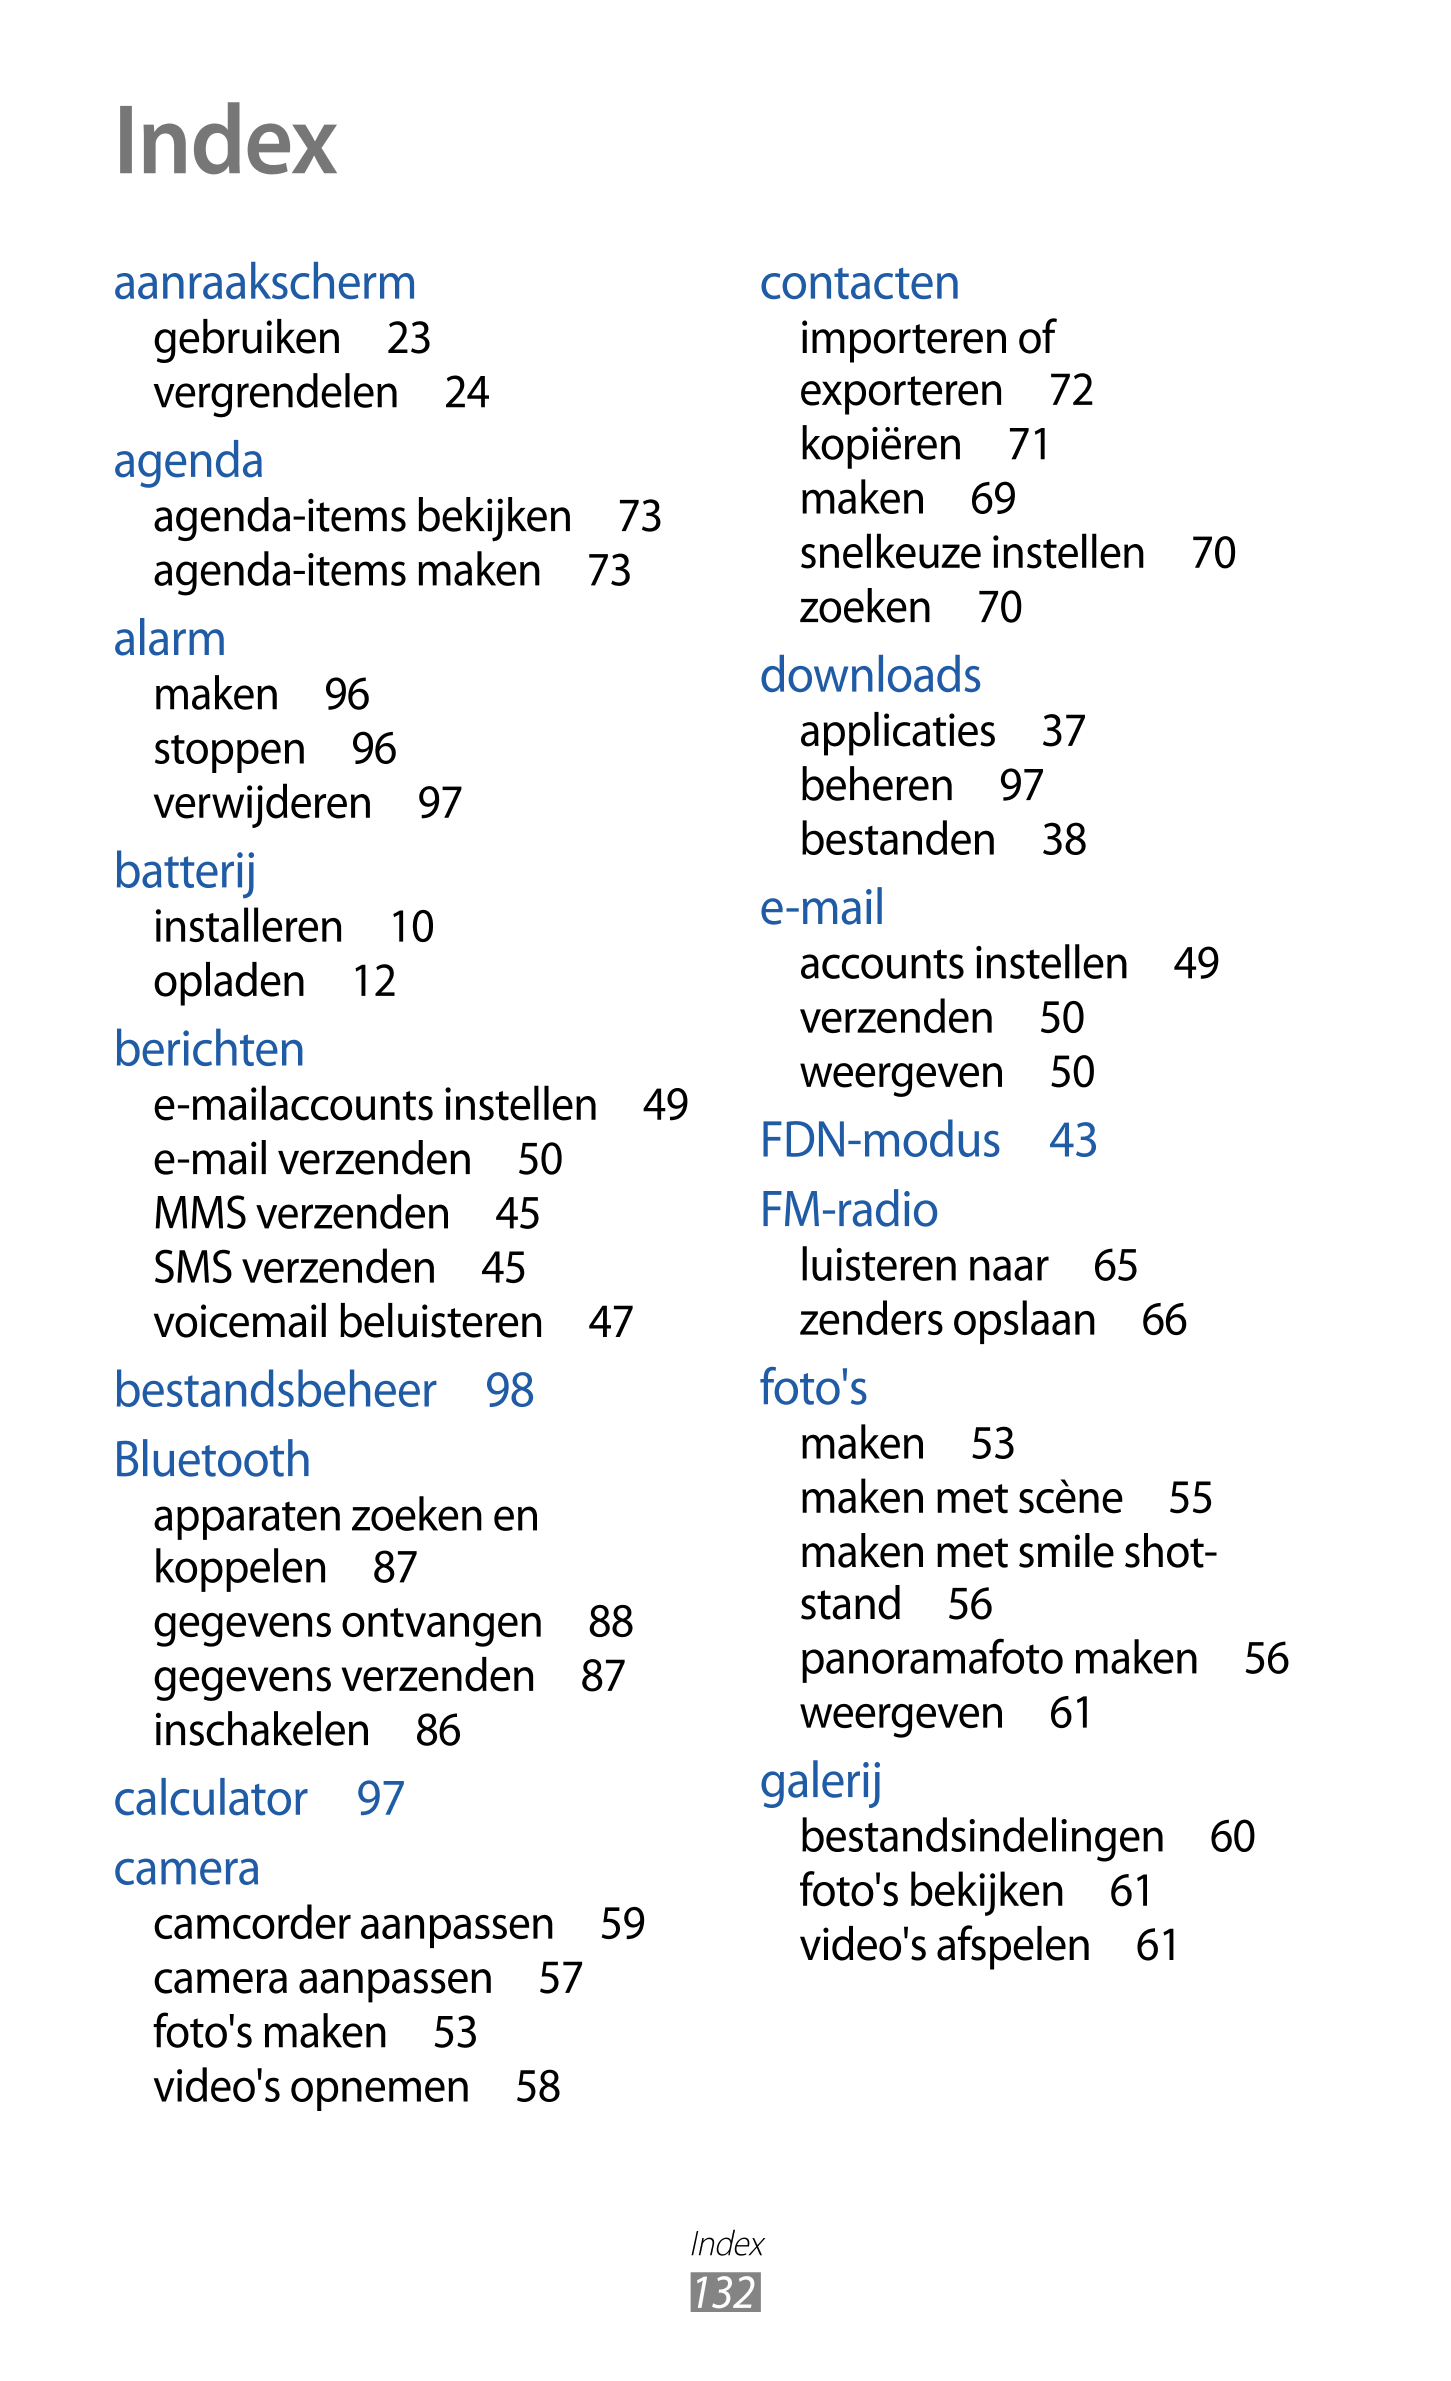 Index
aanraakscherm contacten
gebruiken  23 importeren of 
vergrendelen  24 exporteren  72
agenda kopiëren  71
agenda-items beki